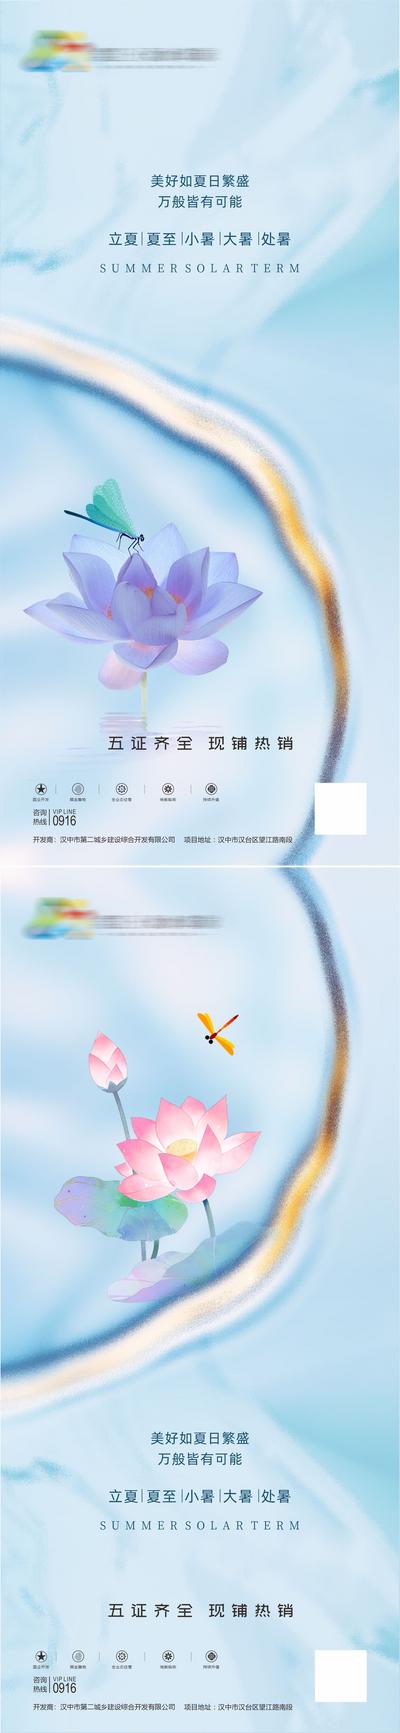 南门网 广告 海报 地产 立夏 节气 鲜花 奢华 品质 荷花 鎏金 系列